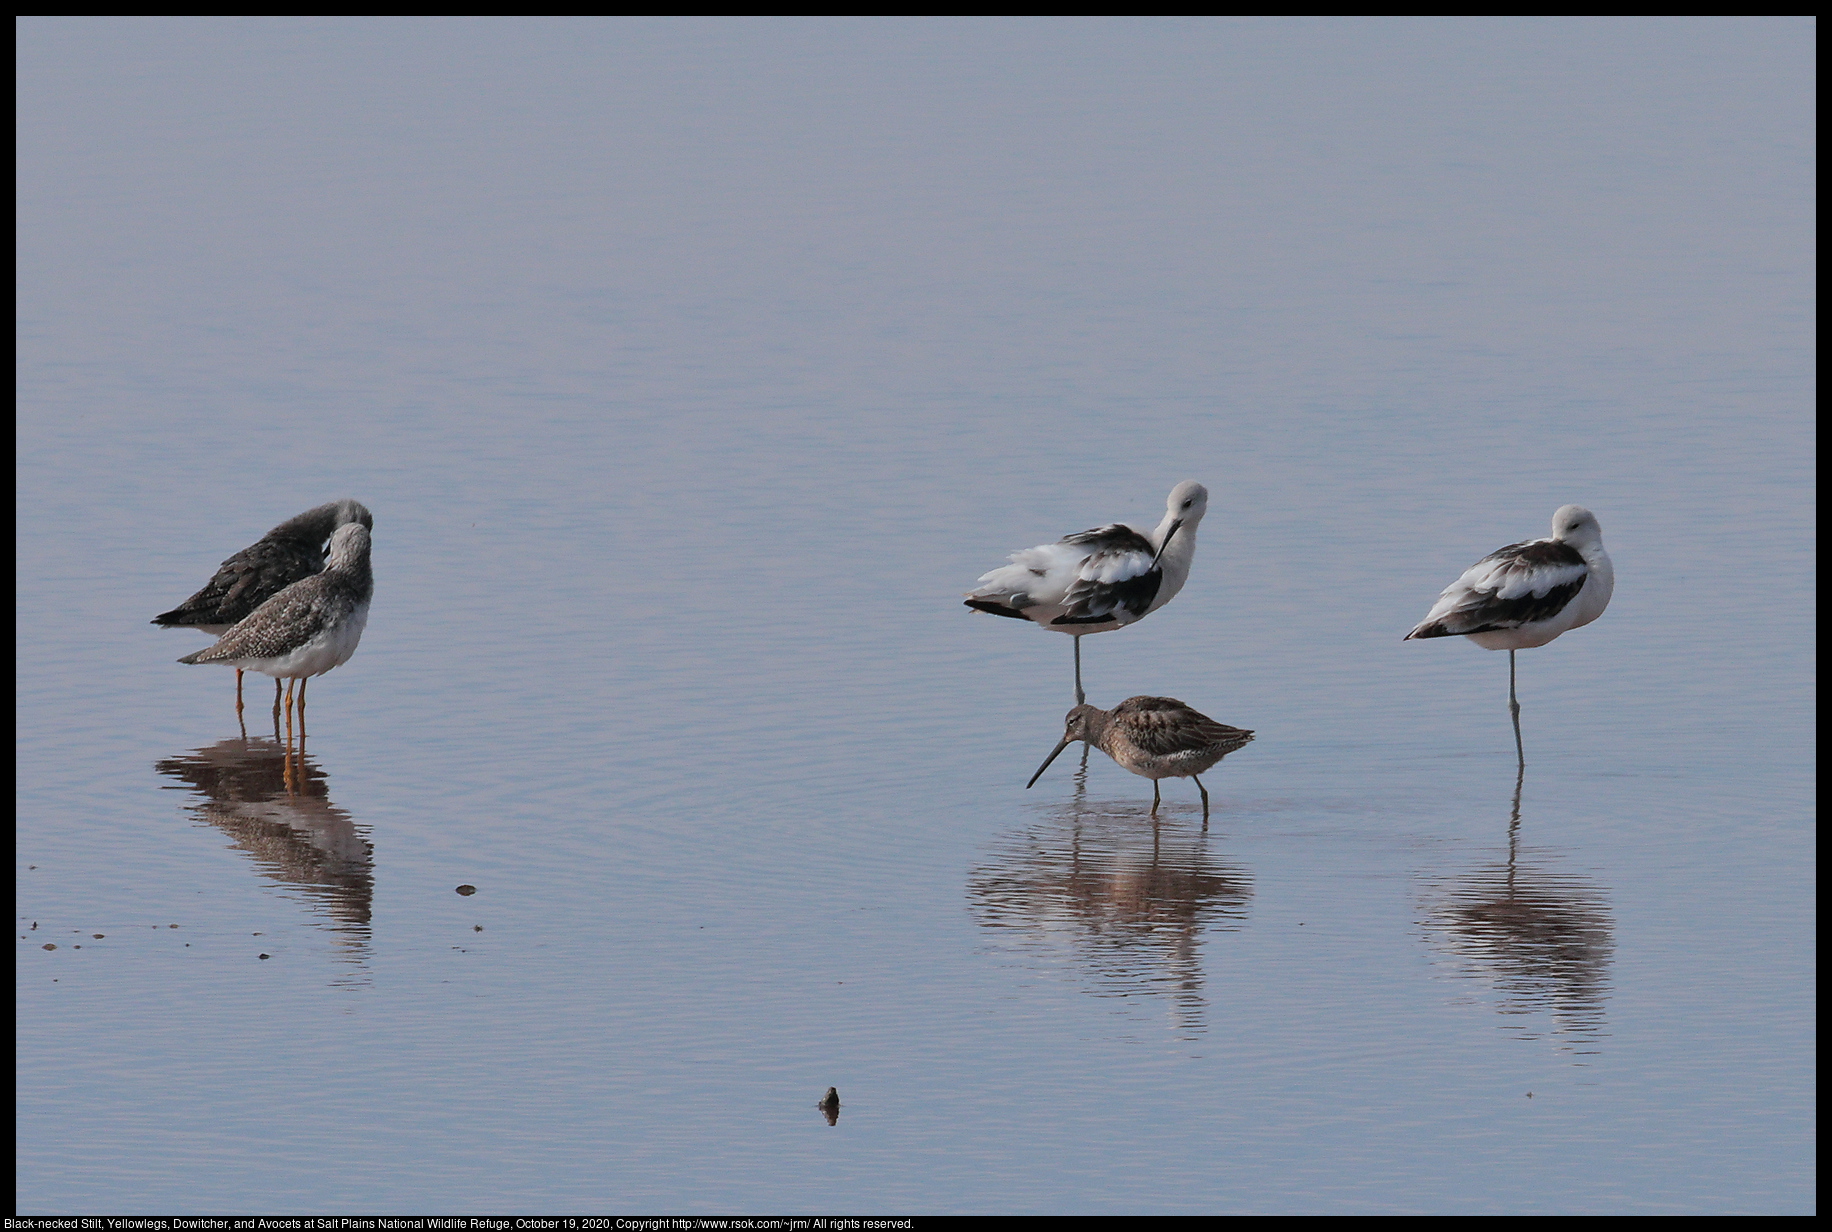 Shorebirds at Salt Plains National Wildlife Refuge, October 19, 2020